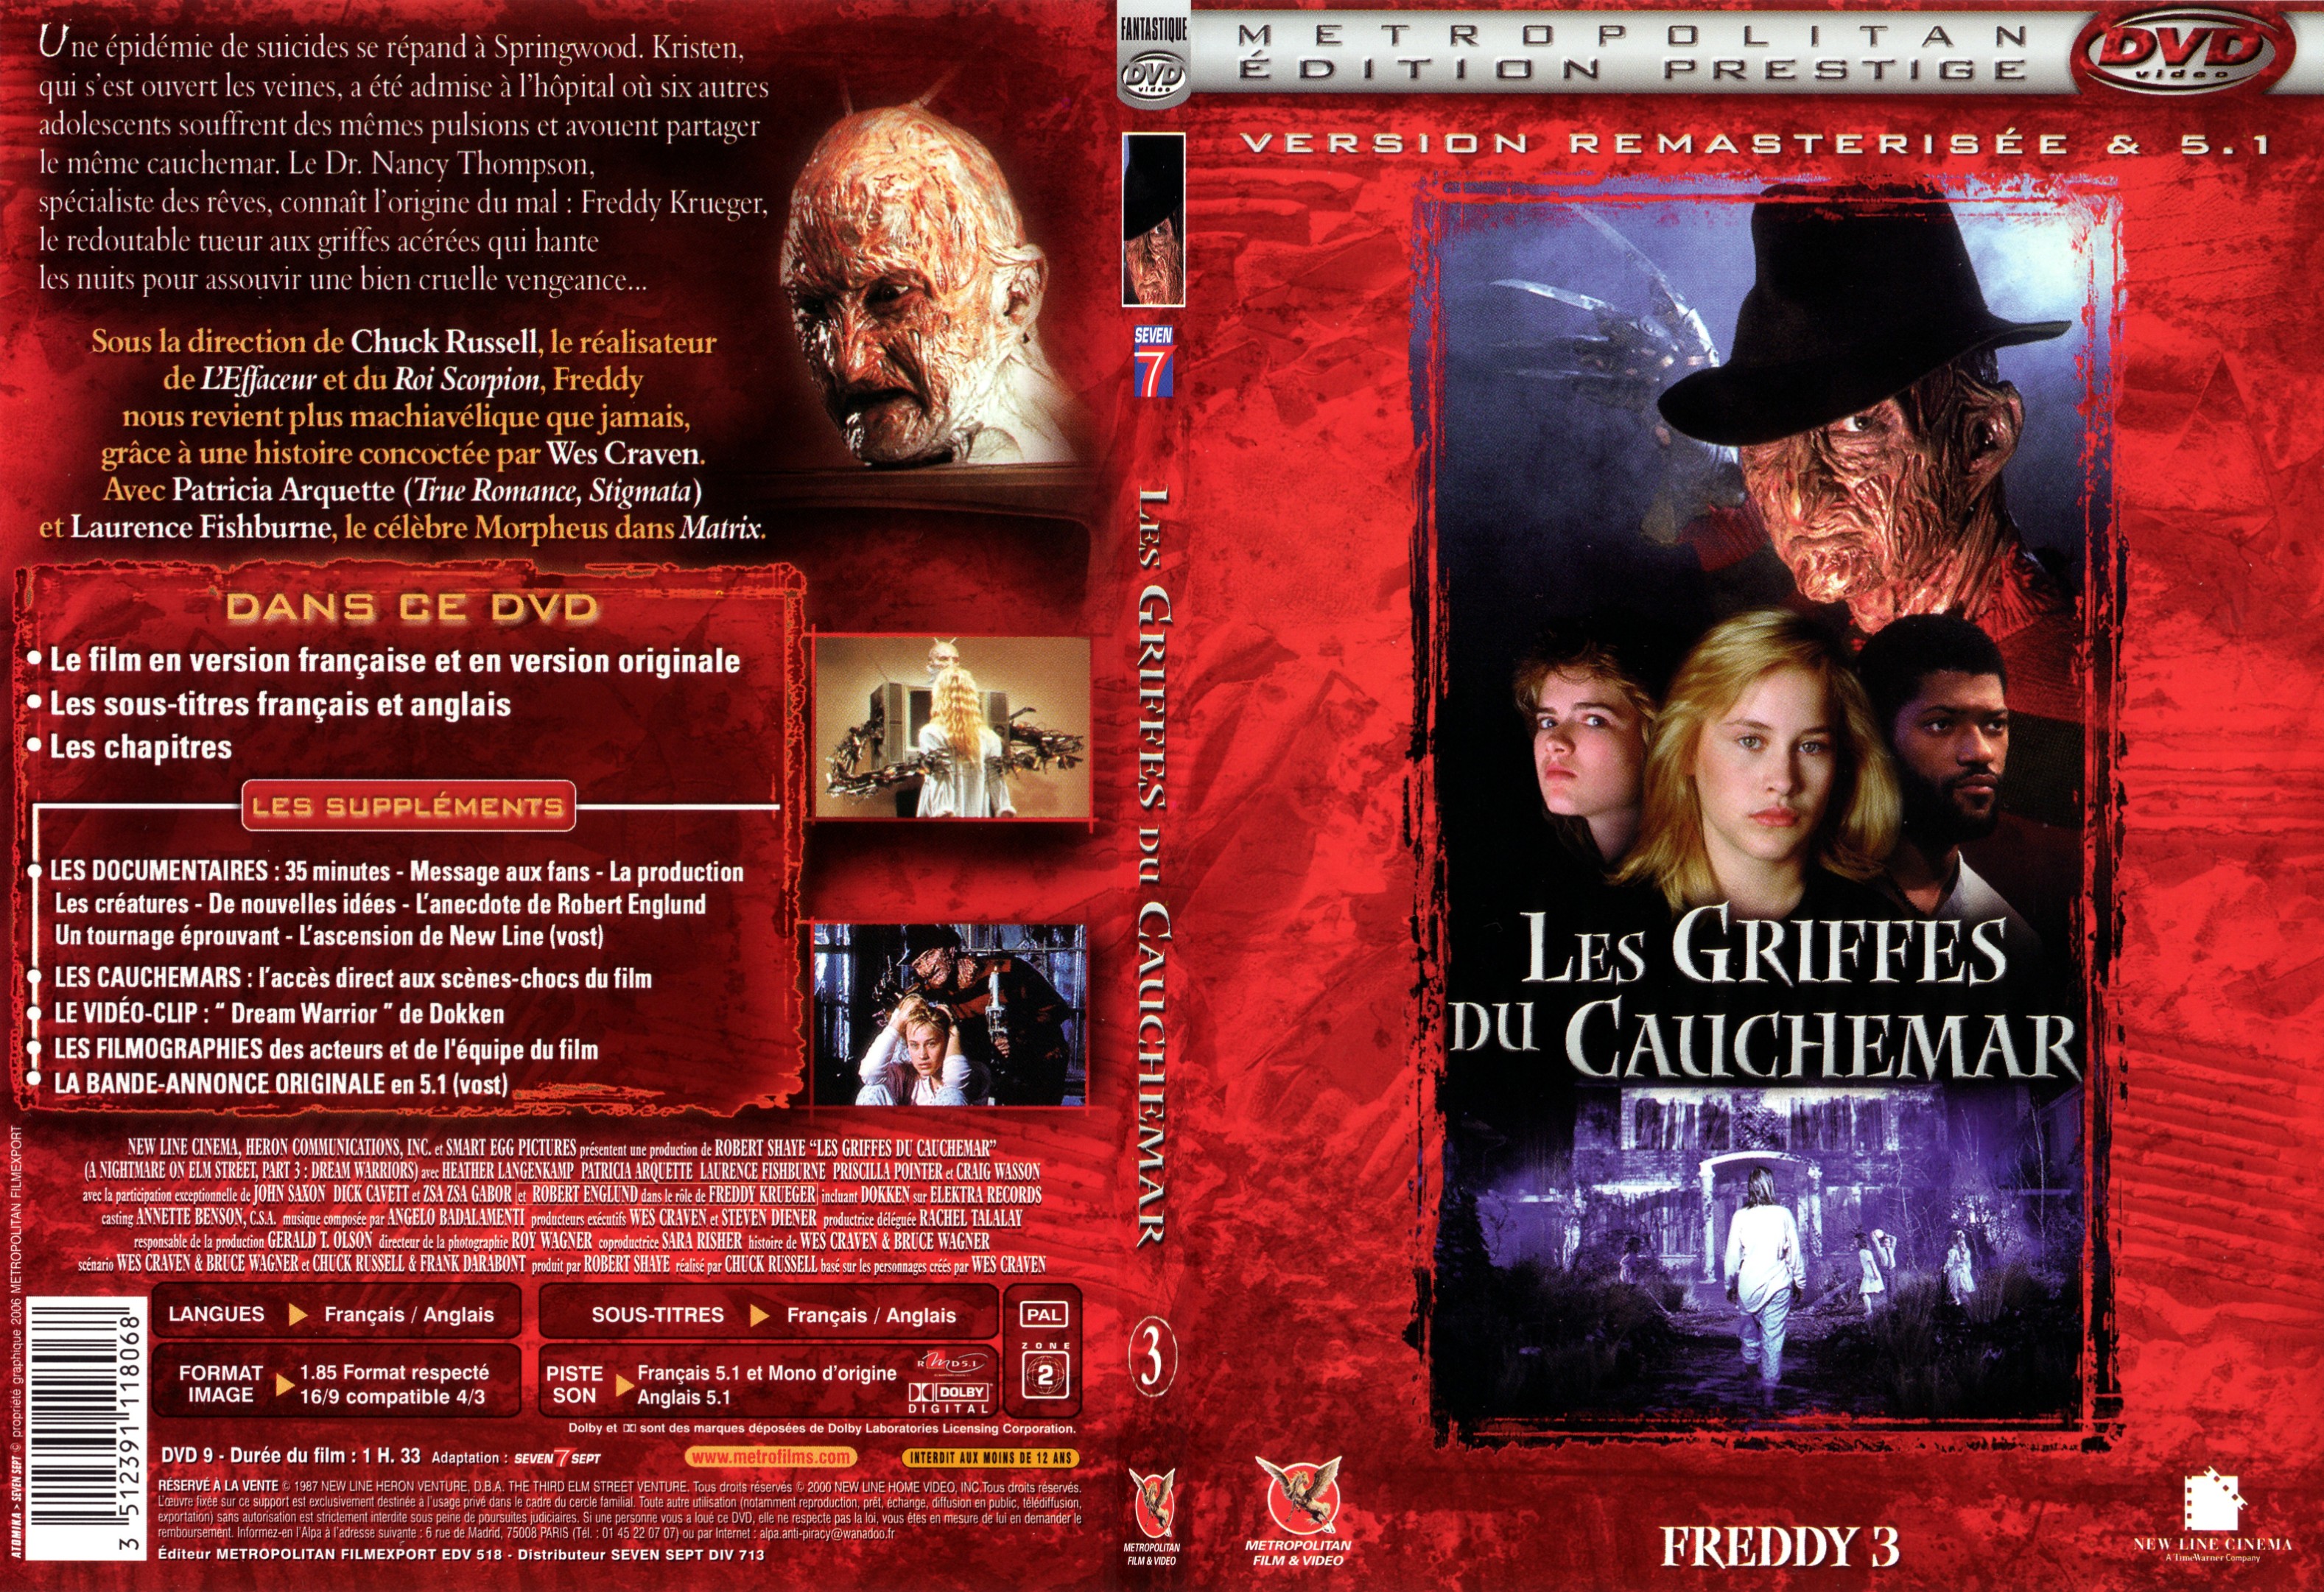 Jaquette DVD Freddy 3 Les griffes du cauchemar - SLIM